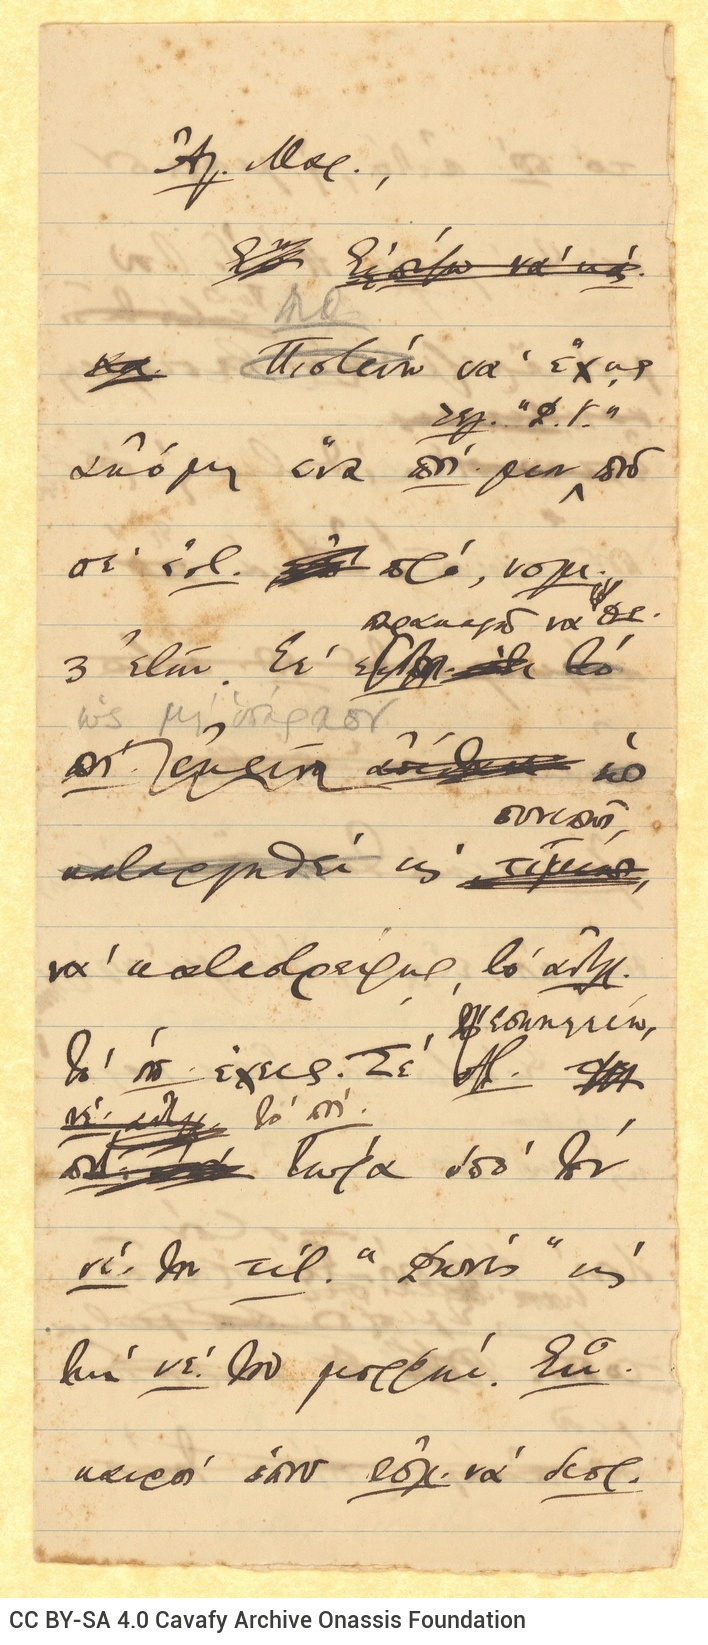 Χειρόγραφο σχέδιο επιστολής του Καβάφη προς την εξαδέλφη του Μαρίκα